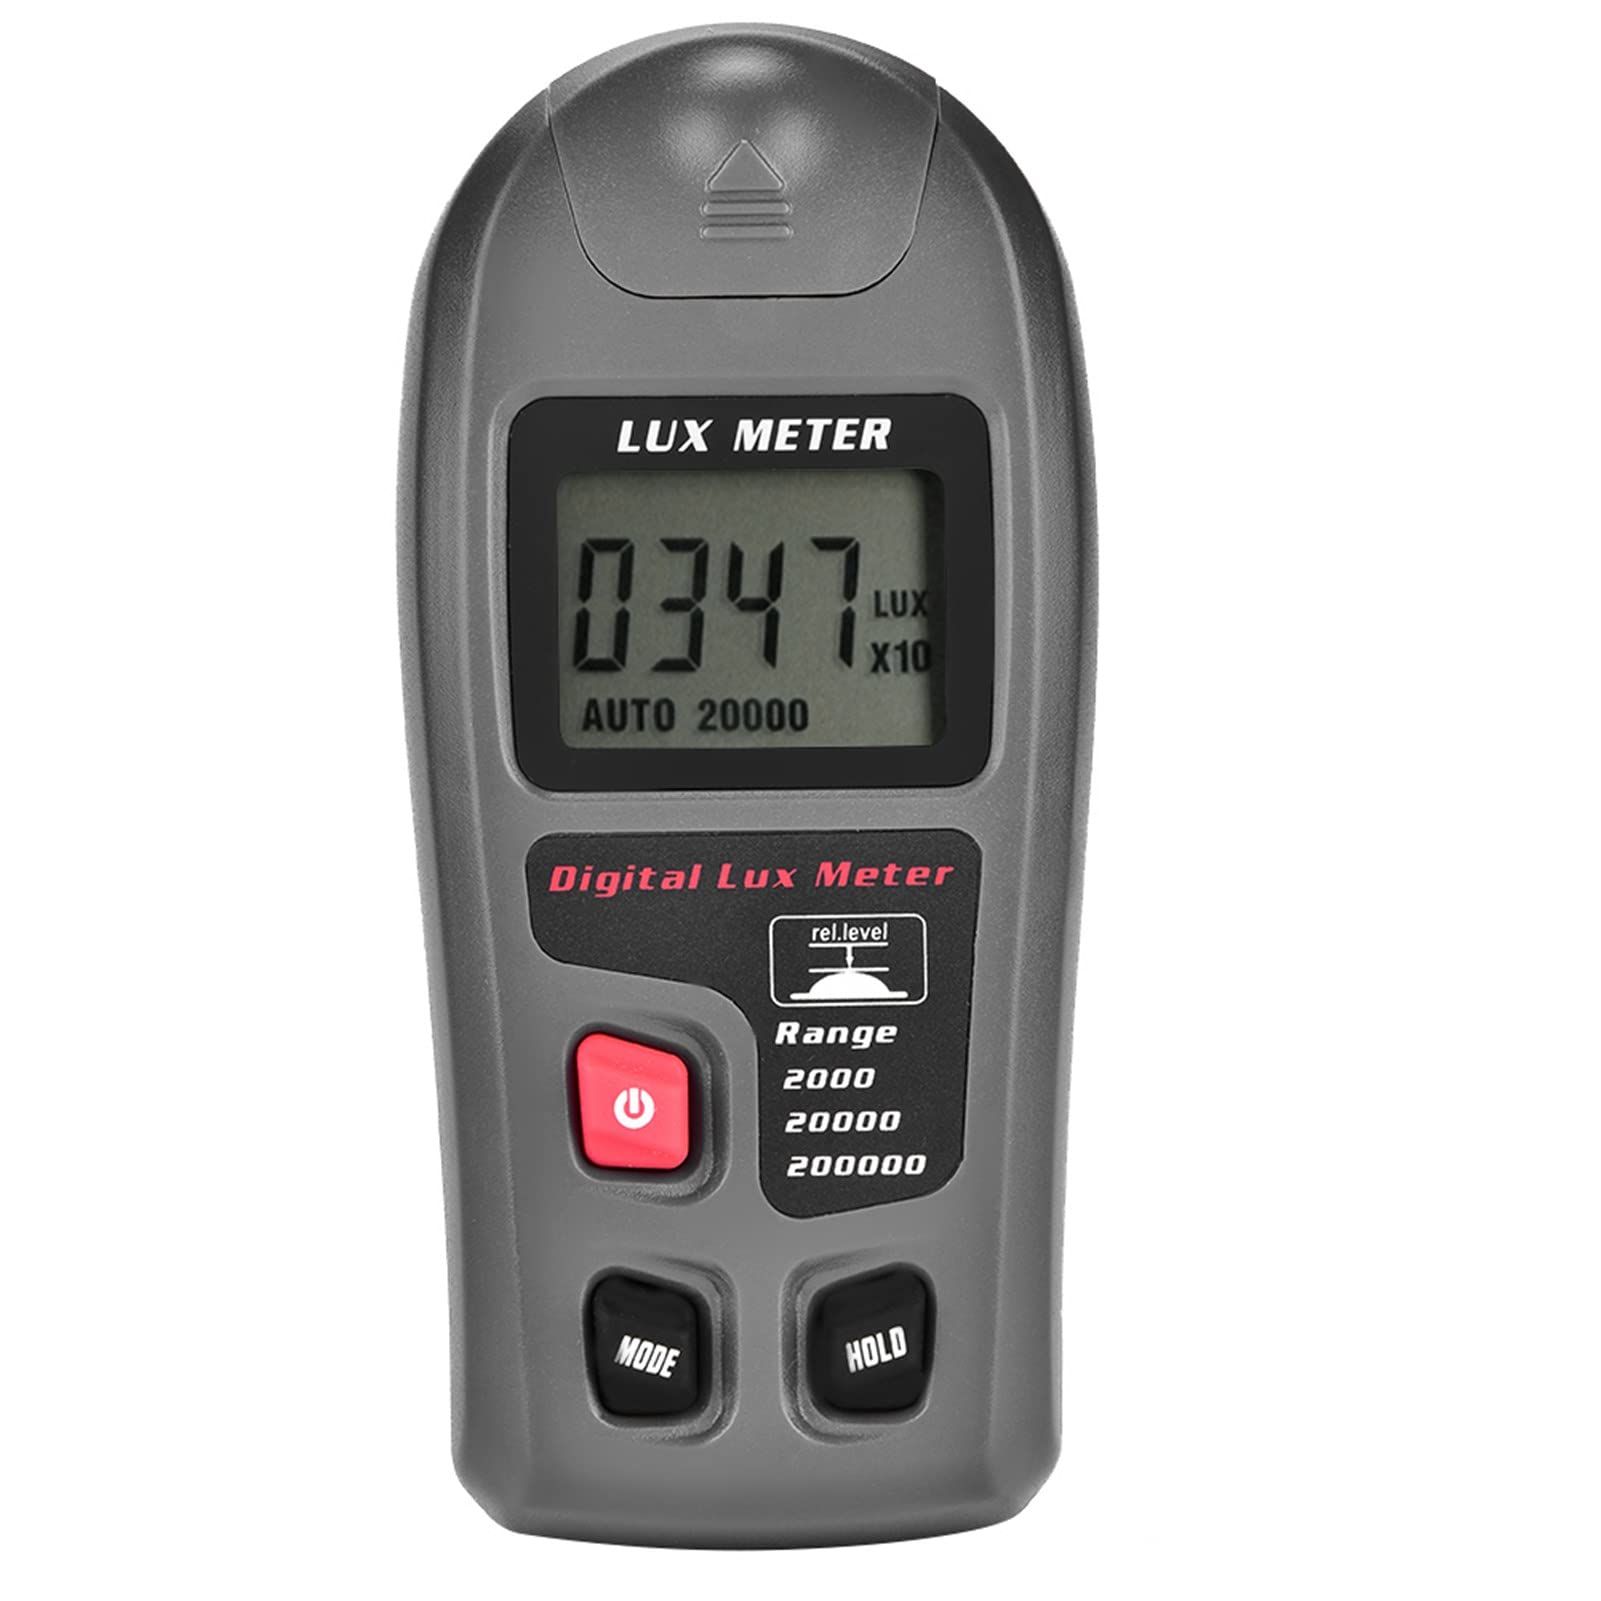 MT-30 Digitaler Illuminometer mit LCD Display Lichtmesser Luxmeter Tester Umweltprüfung Illuminometer für Industrie mit Bereich 0,1-20000 Lux oder 0,01-20000 Fc